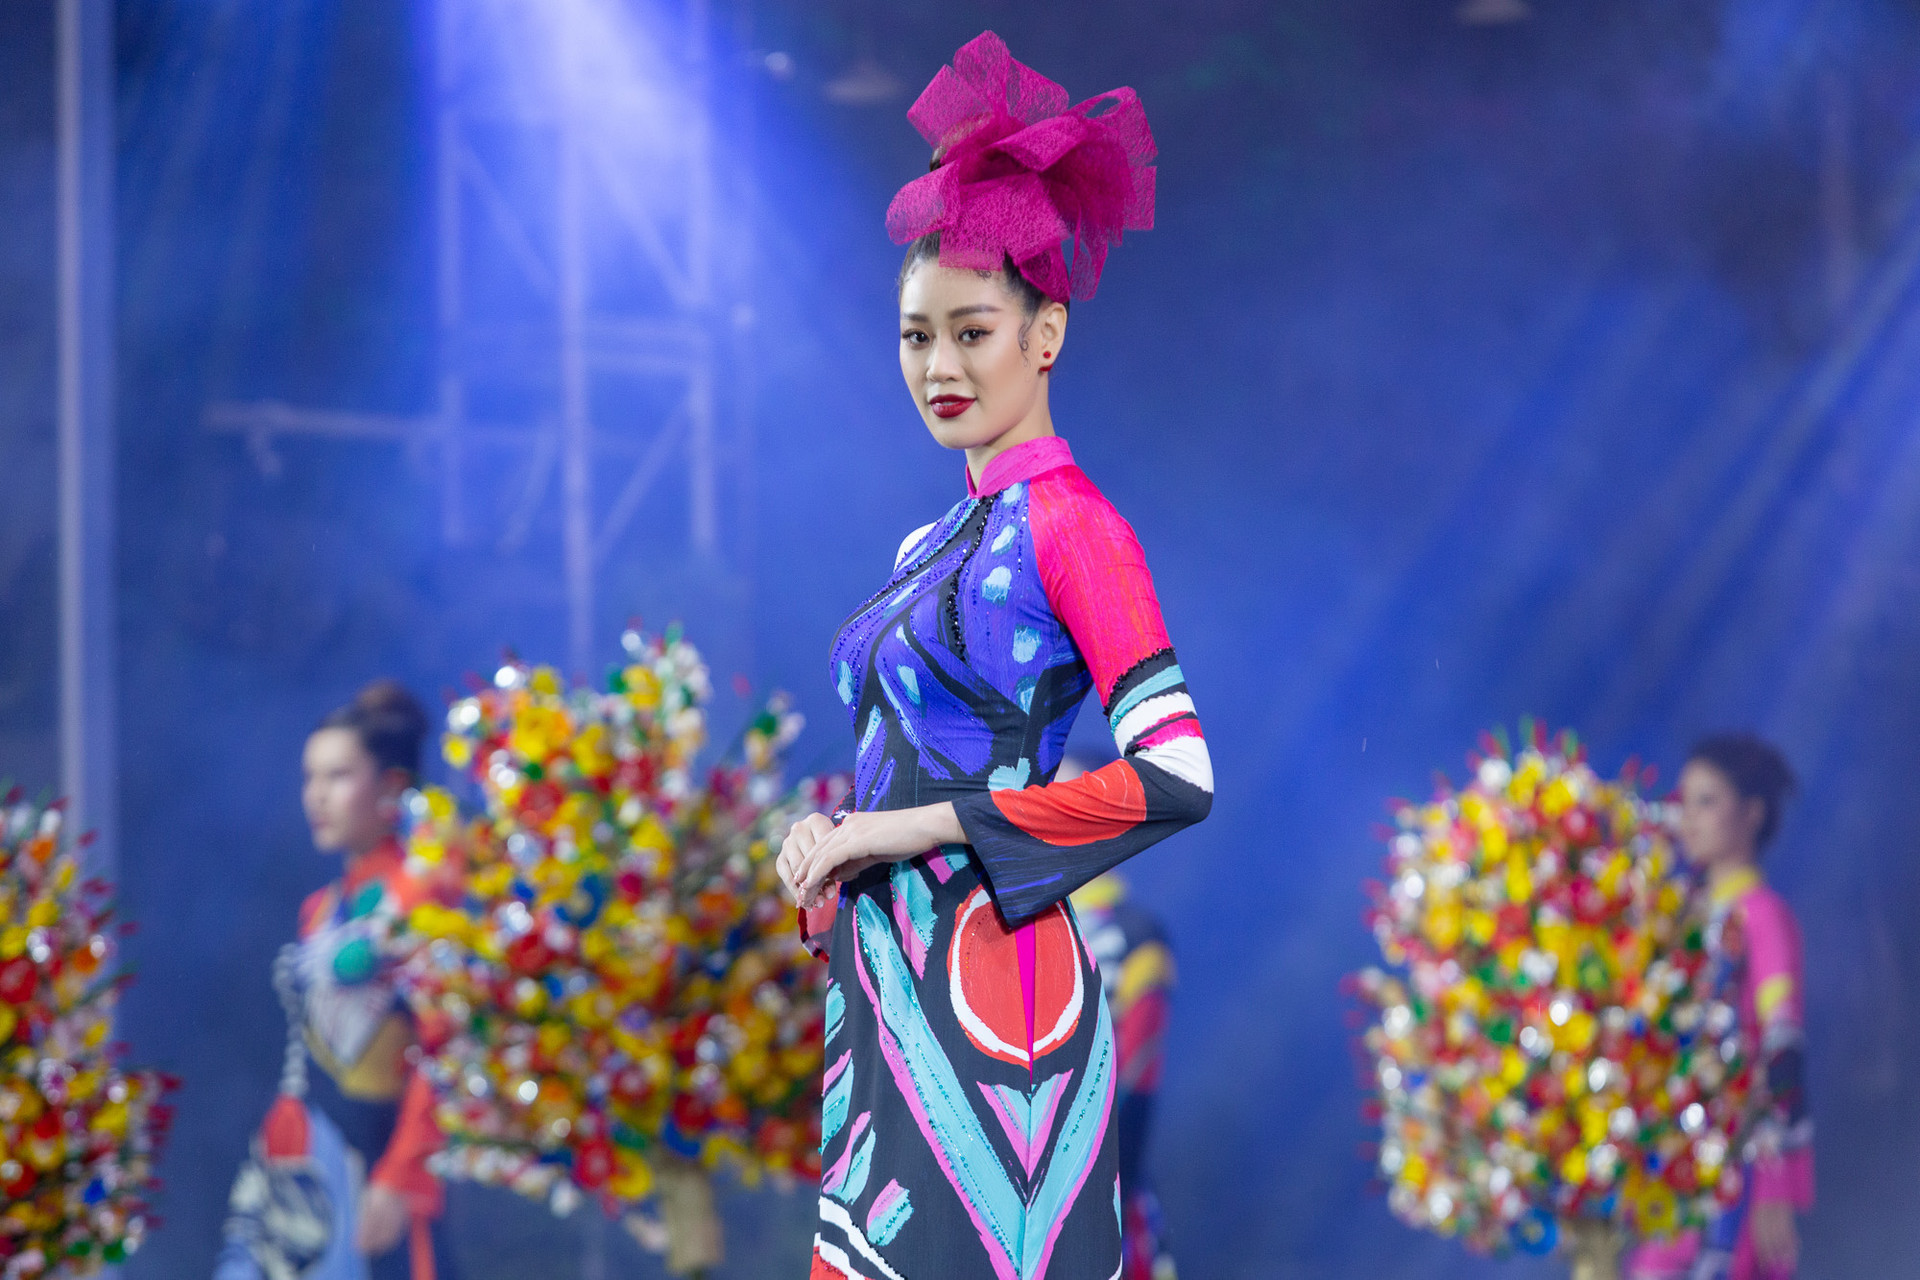 Hoa hậu Khánh Vân nổi bật tại Lễ hội Áo dài TP.HCM 2020 - Ảnh 4.